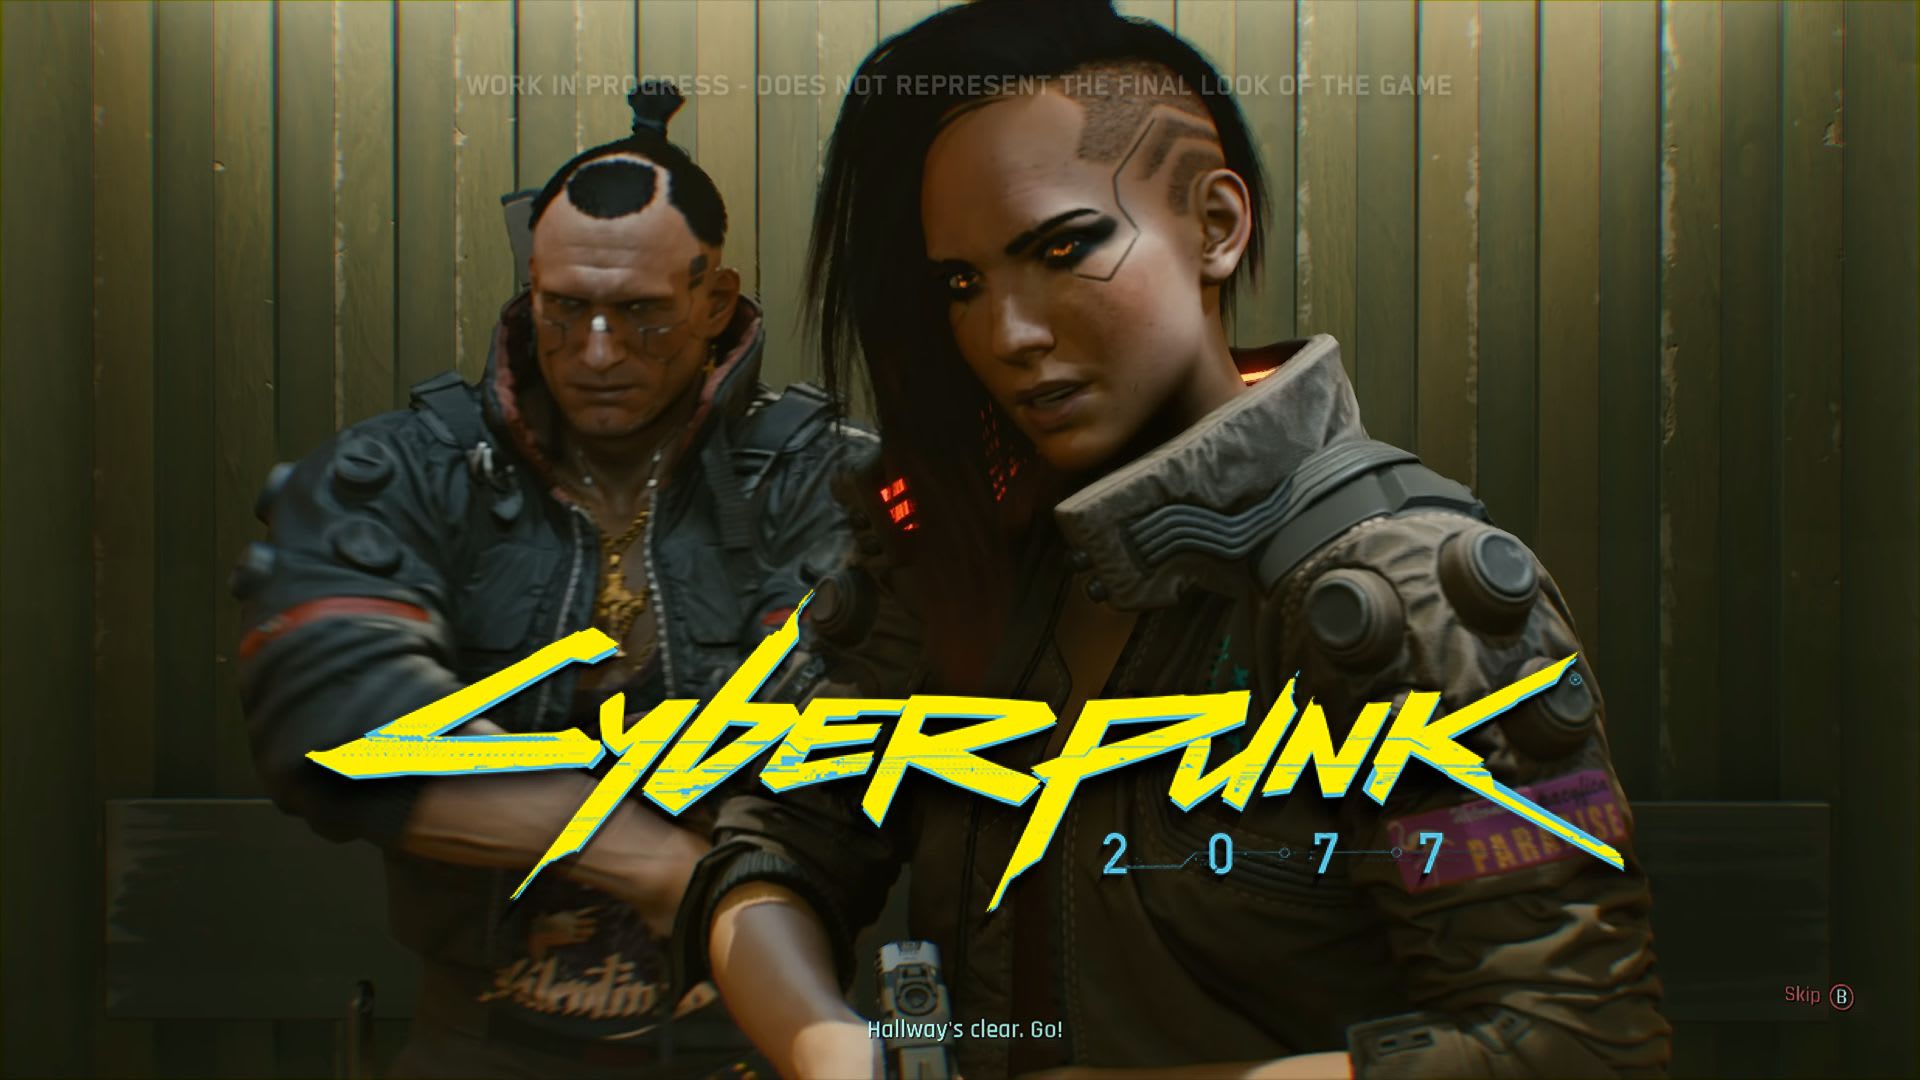 Hlavní hrdinové první ukázky hraní Cyberpunku 2077